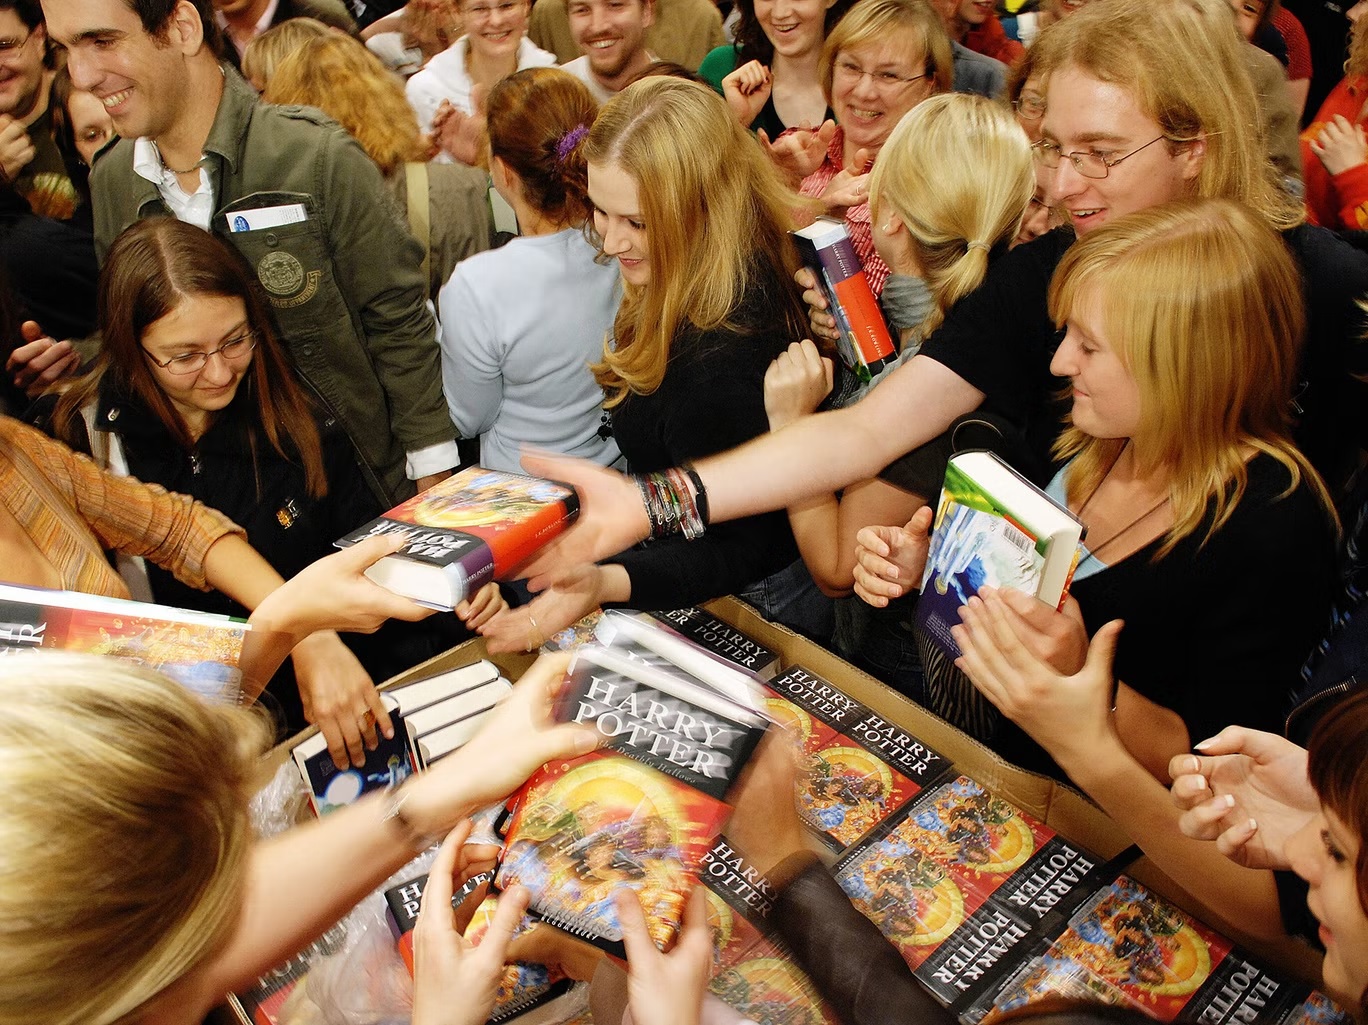 المعجبون الألمان يتدافعون للحصول على نسخة من كتاب "هاري بوتر ومقدسات الموت" عام 2007 (غيتي)